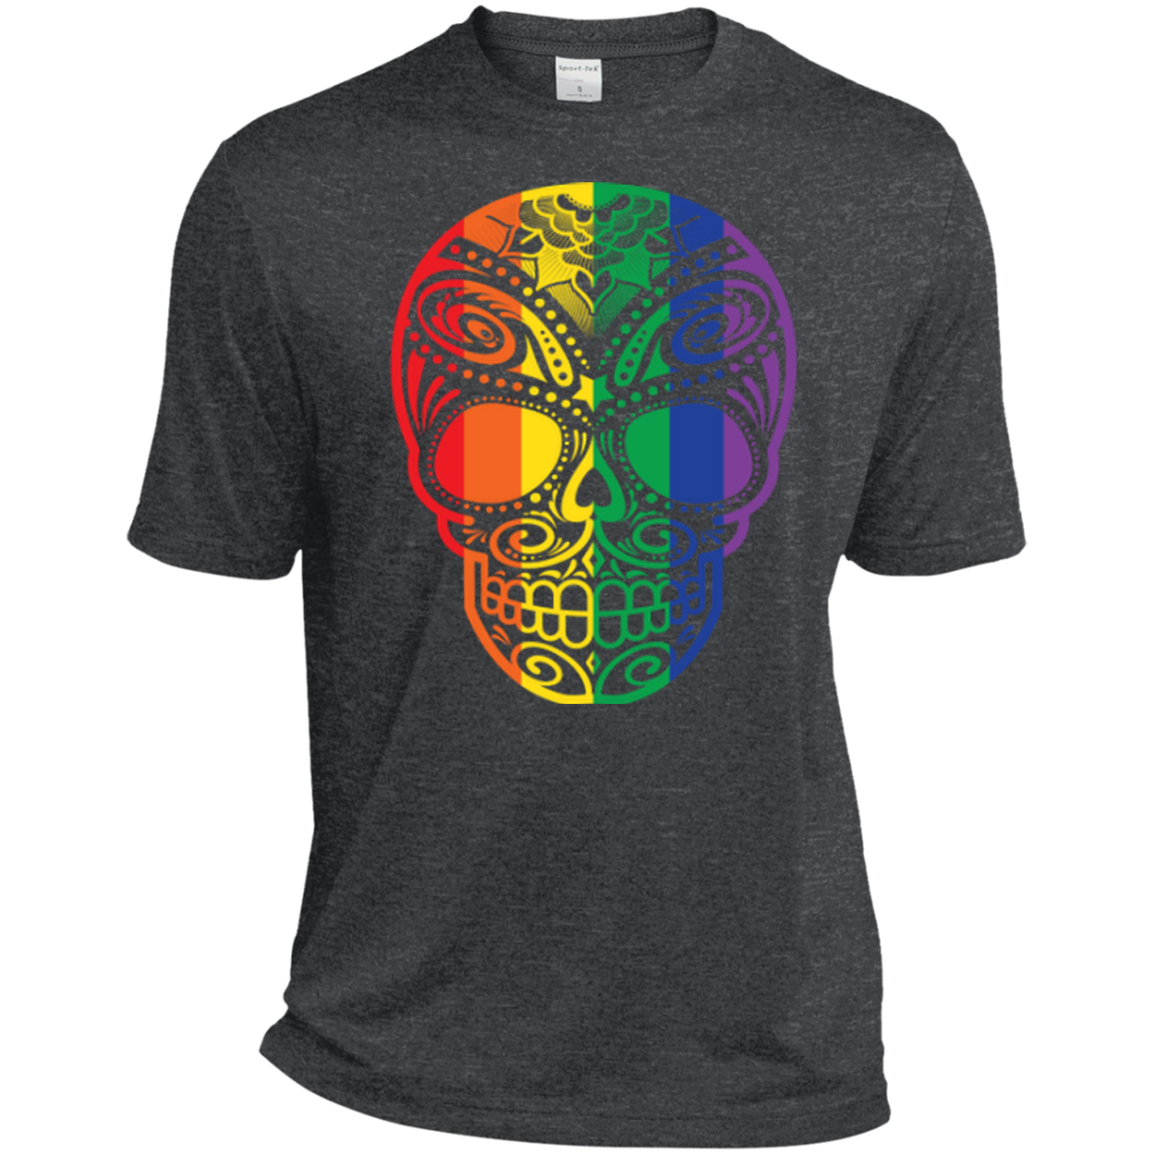 Rainbow Skull dark gray T Shirt for men LGBT Pride Tshirt for men